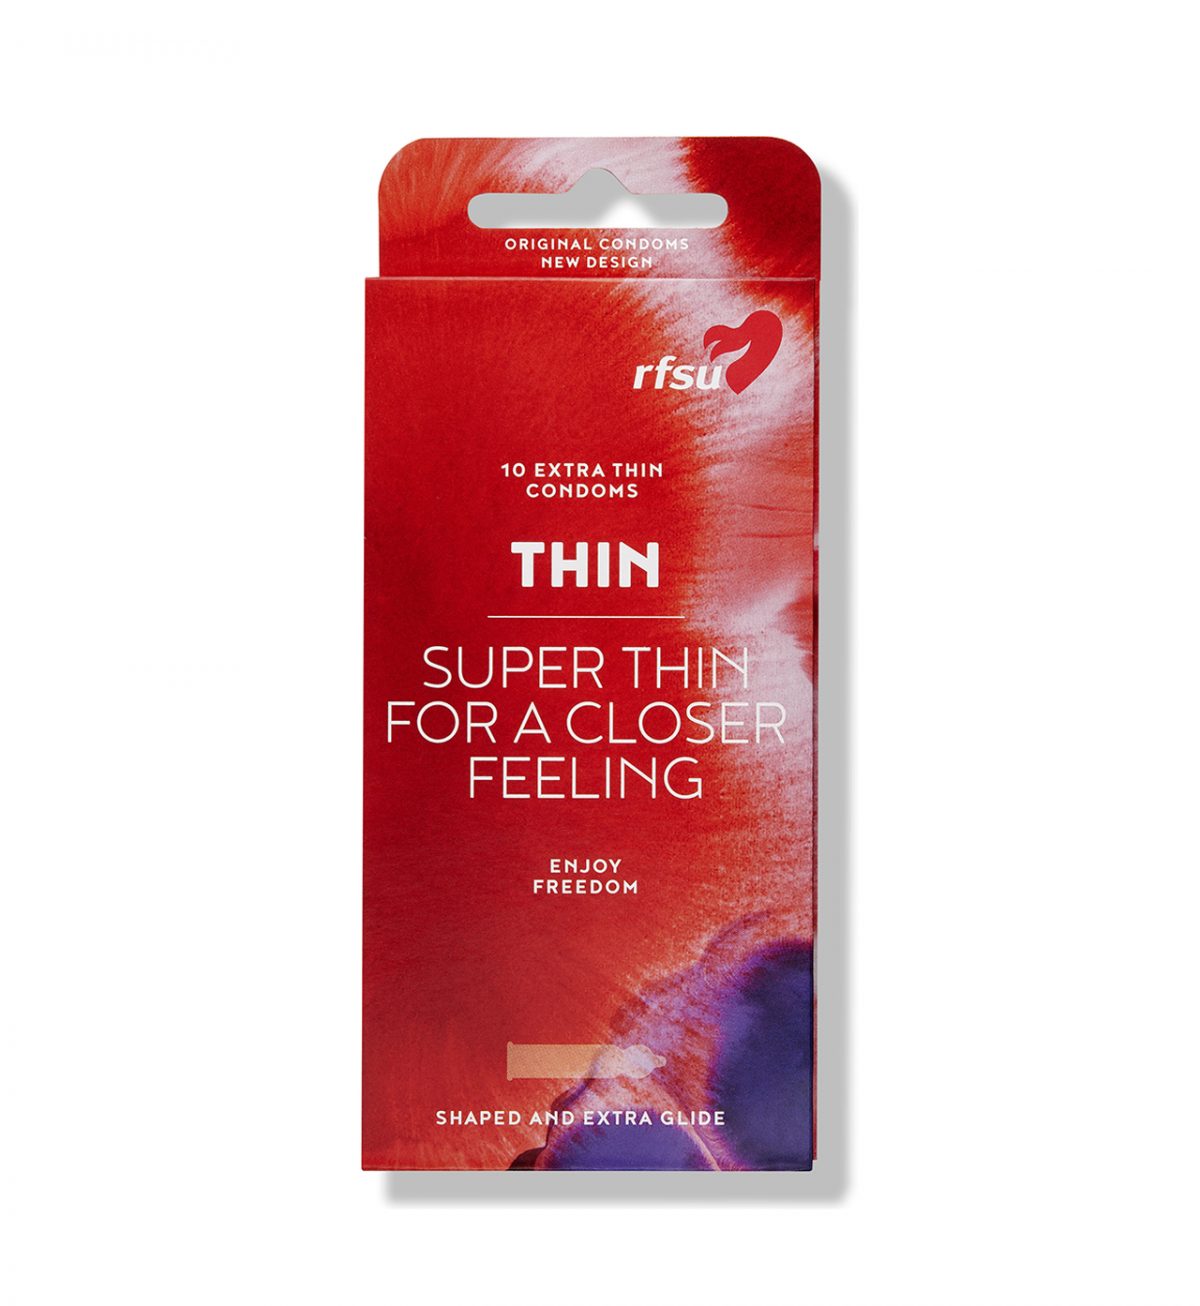 rfsu thin kondomer 10 pack